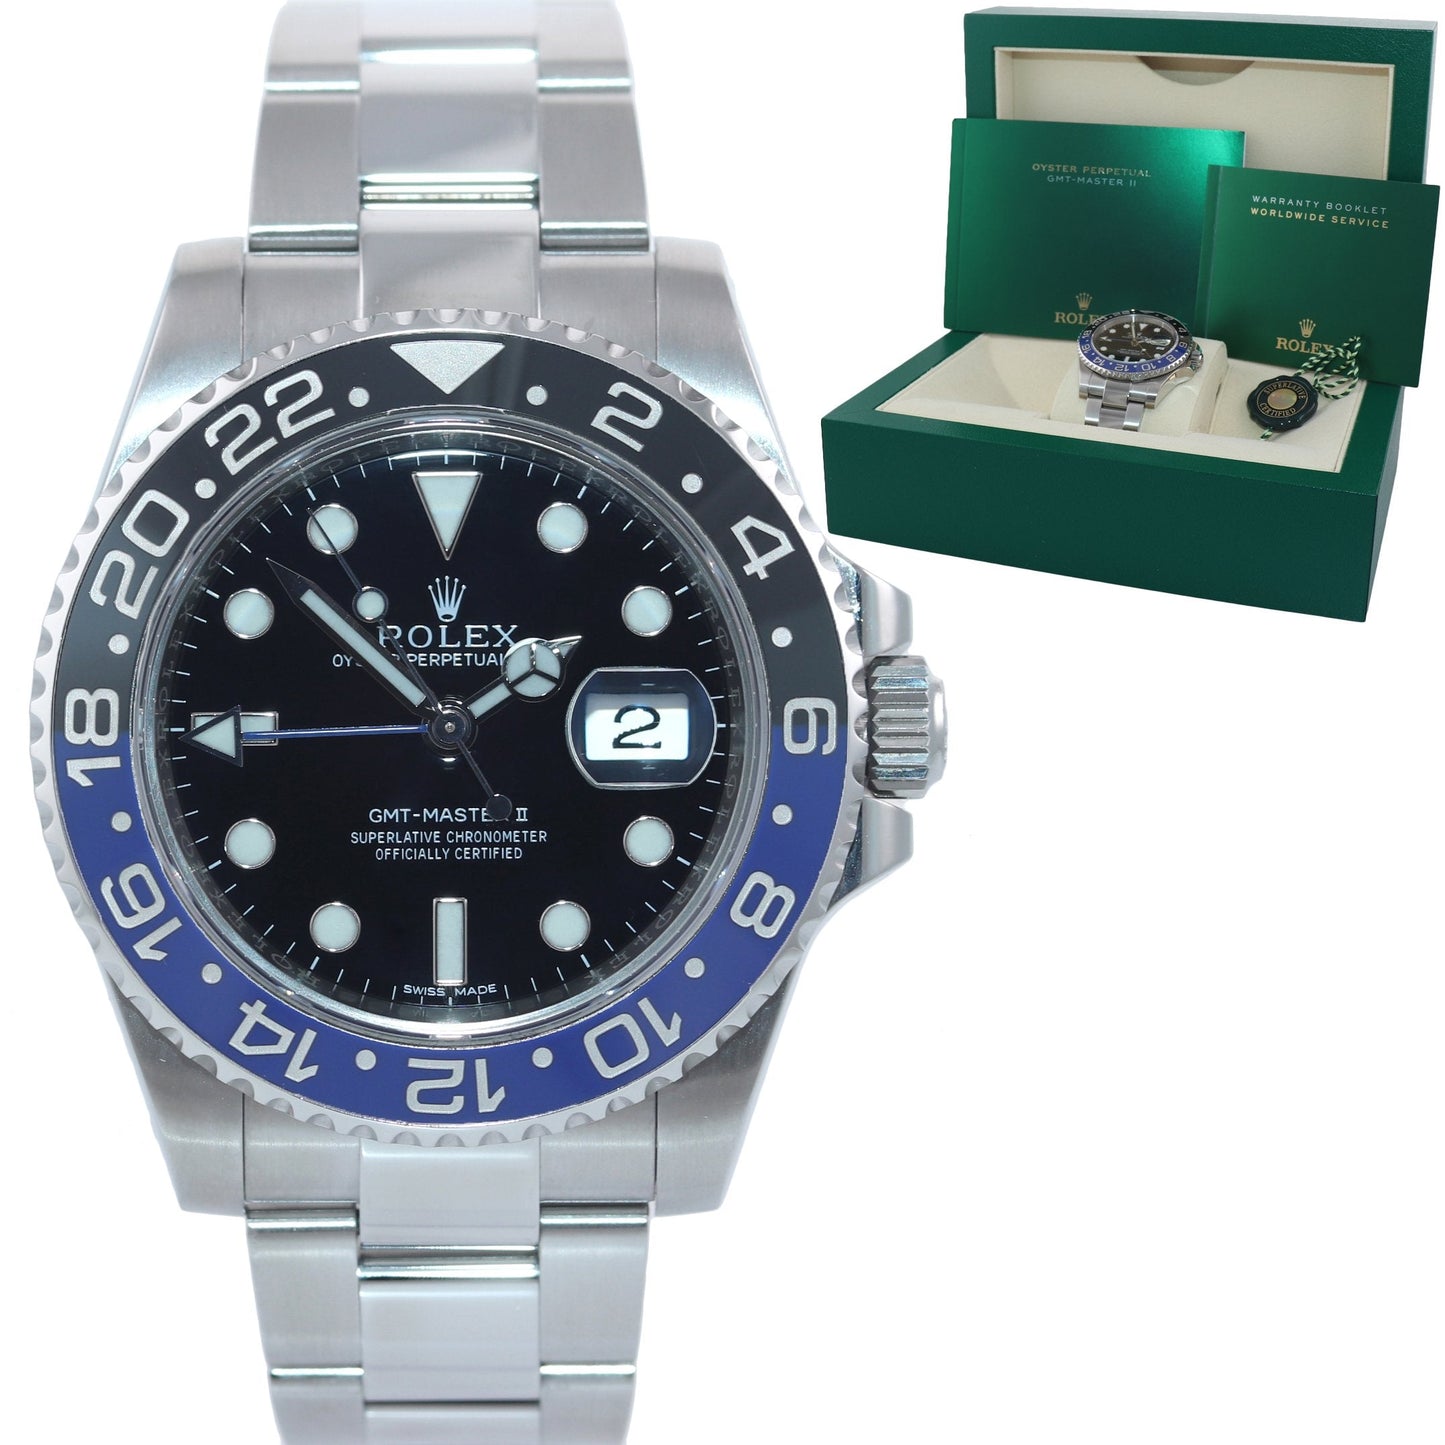 MINT 2018 Rolex GMT Master II 116710 BLNR Steel Ceramic Blue Batman Watch Box